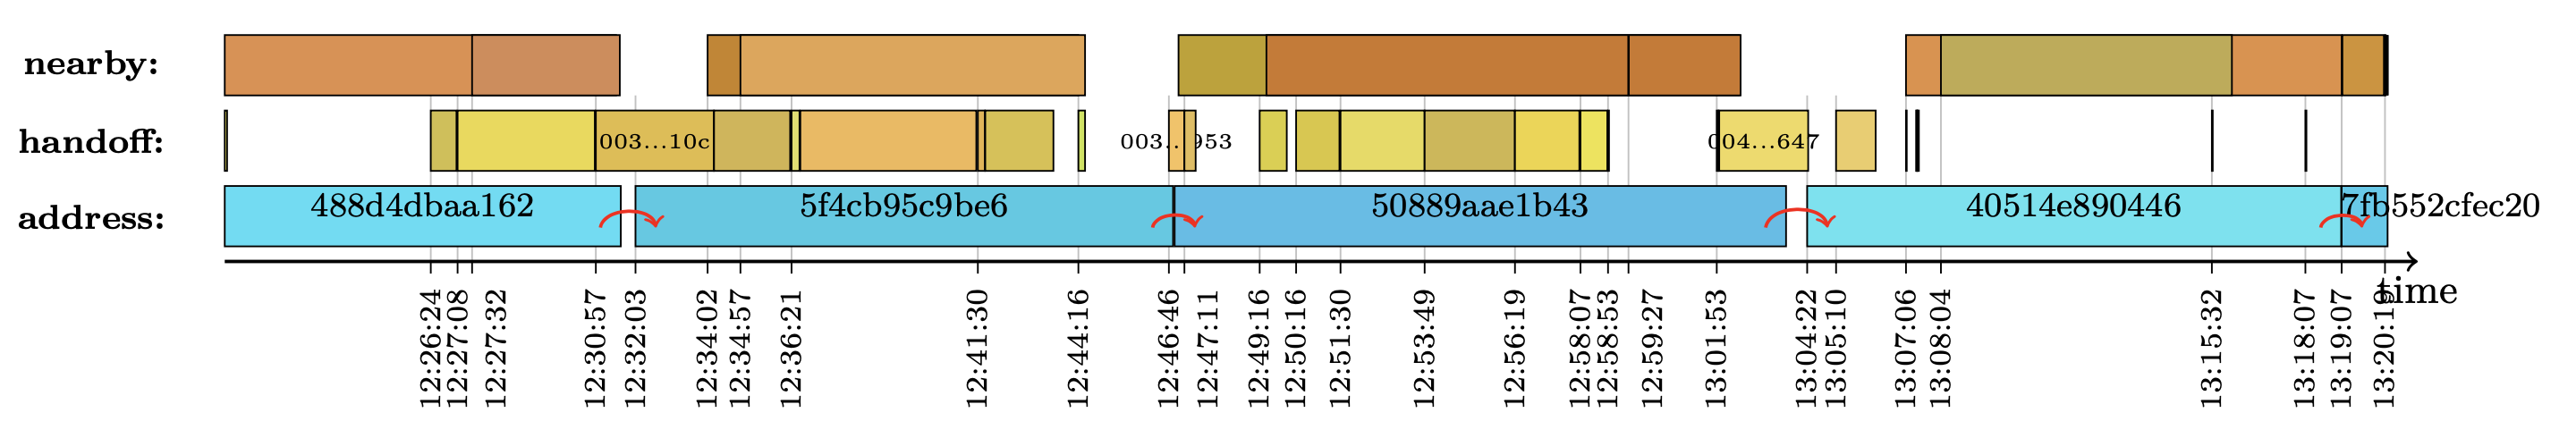 Рис. 3. Пример работы алгоритма для iOS-устройства. Первые три вычисления адреса выполнены с помощью сохранявшегося токена handoff, последний — с помощью токена nearby. Разные цвета отражают различные значения полей.